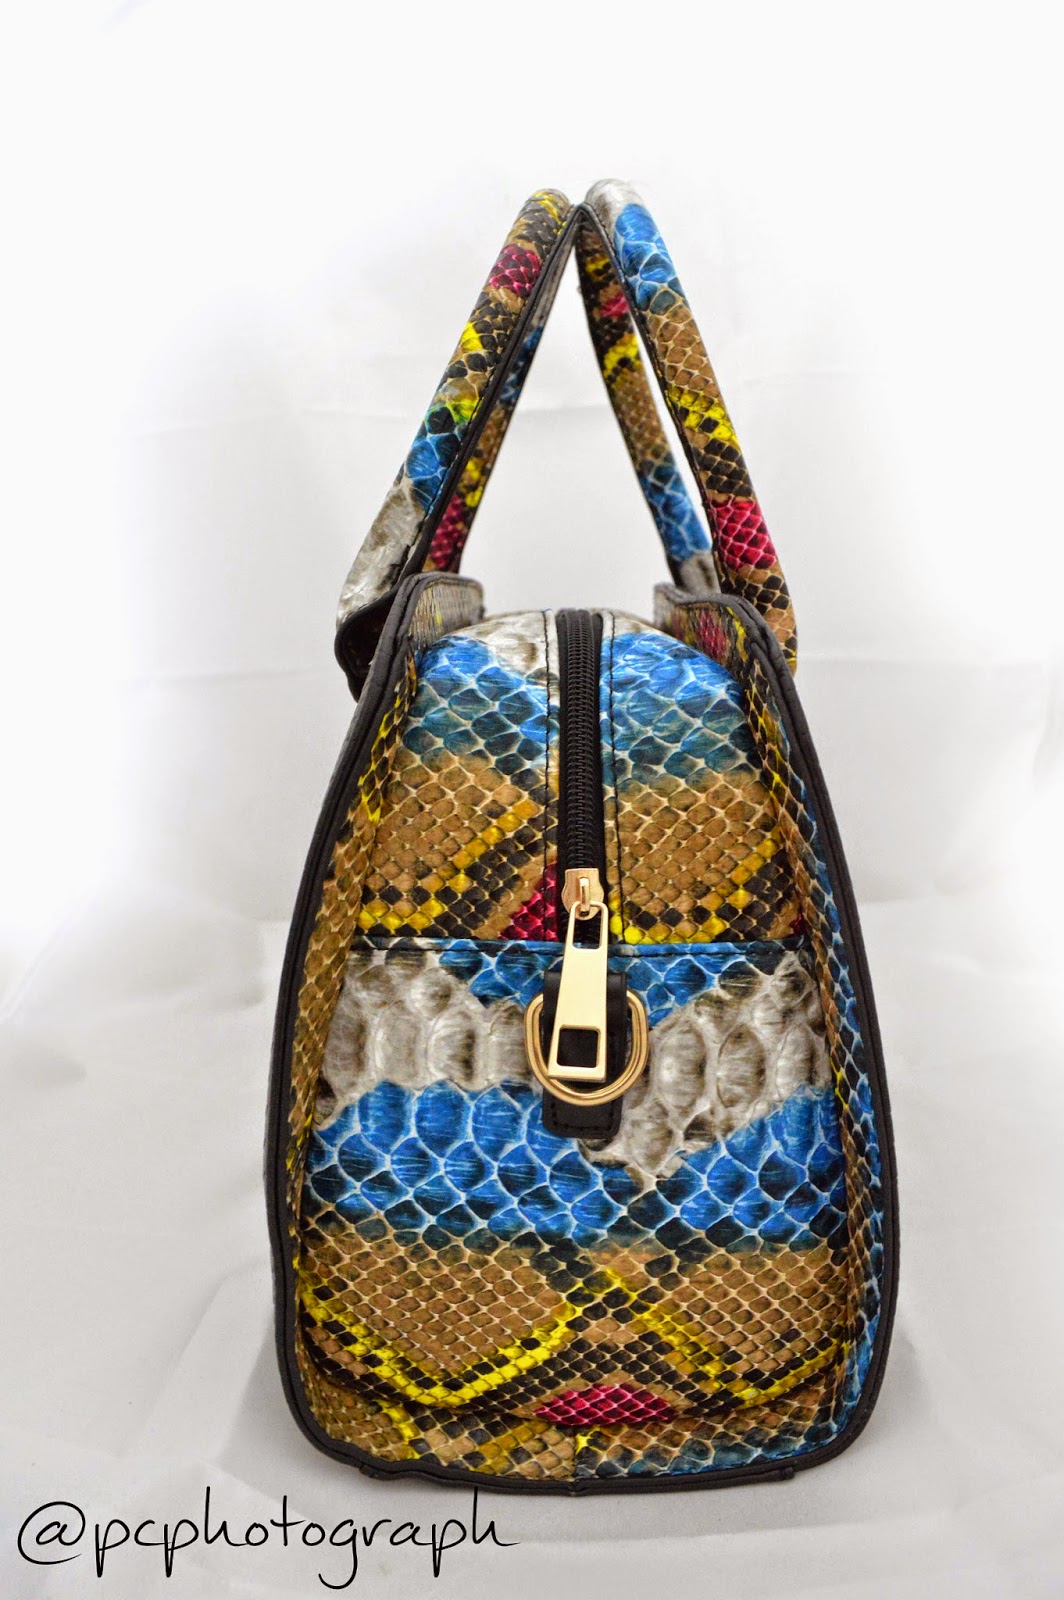 agen tas batam yang menjual berbagai macam tas fashion yang murah dan berkualitas kunjungi kami lebih lanjut